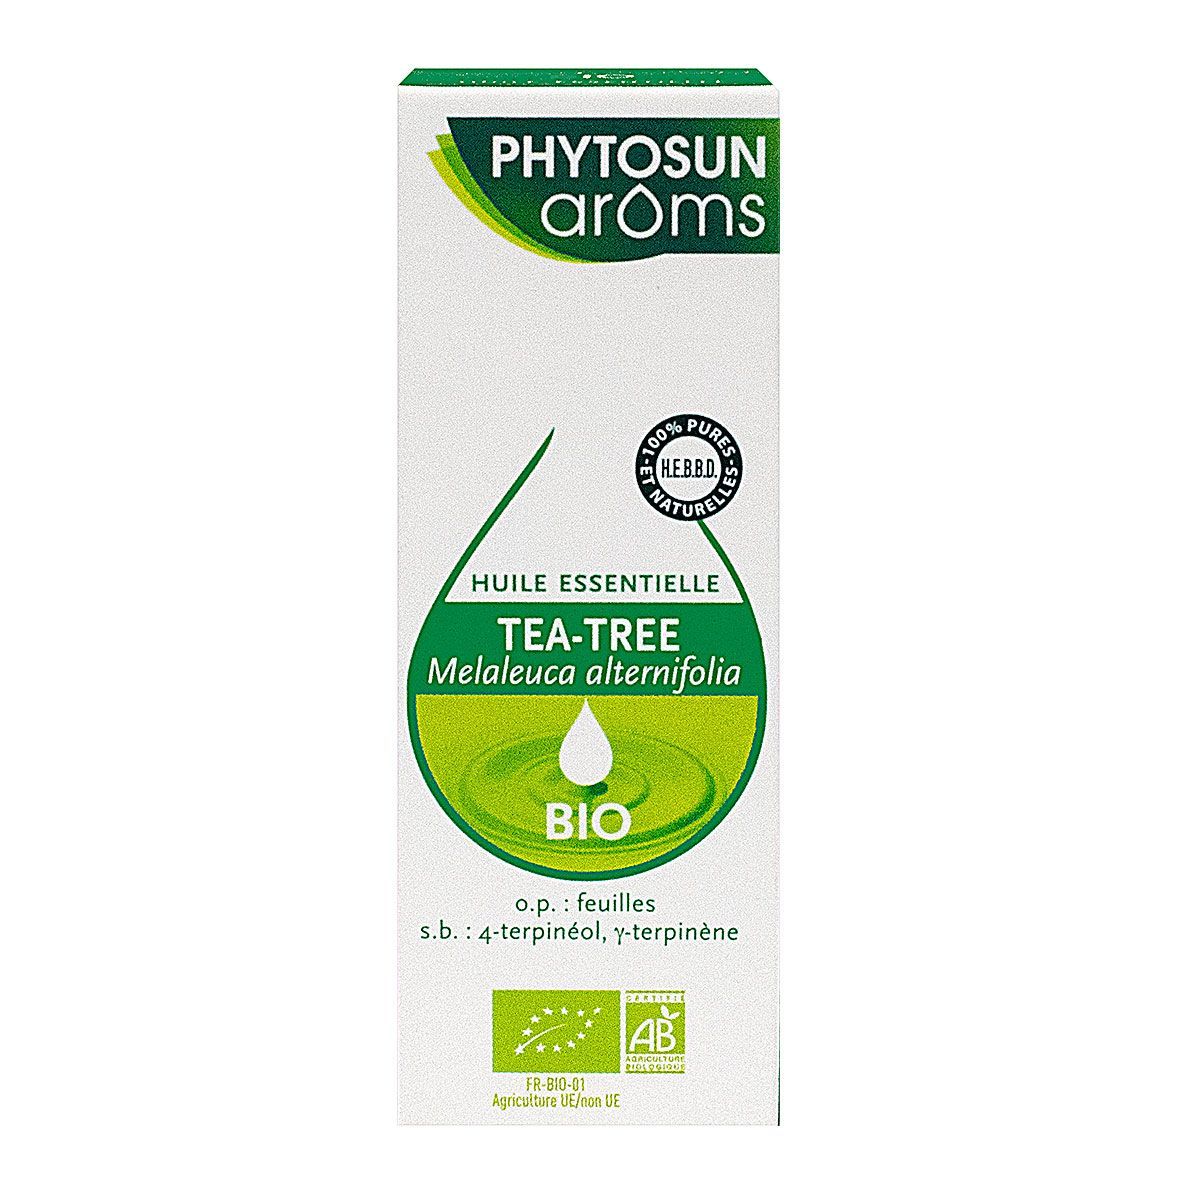 L'huile essentielle de tea-tree Phytosun Aroms est utilisée en cas